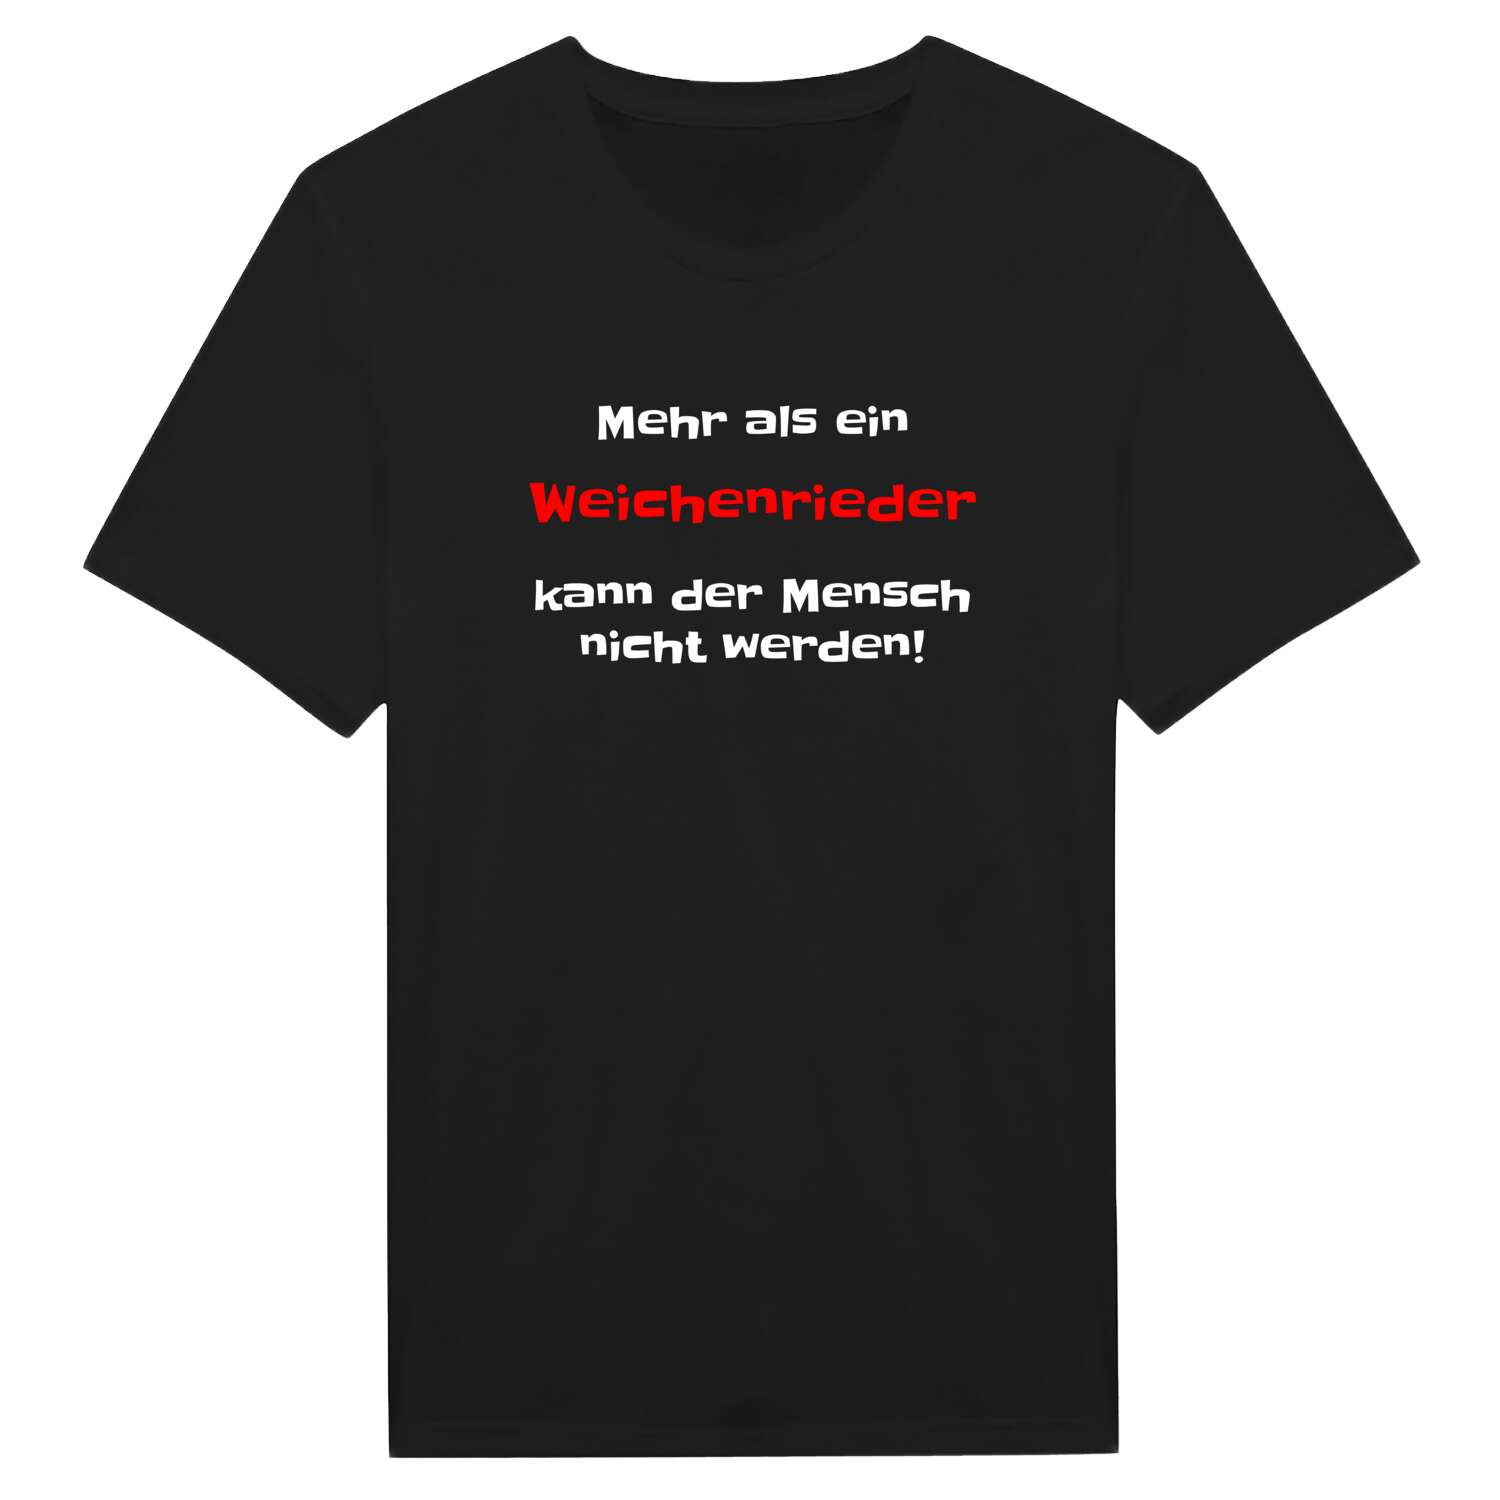 Weichenried T-Shirt »Mehr als ein«